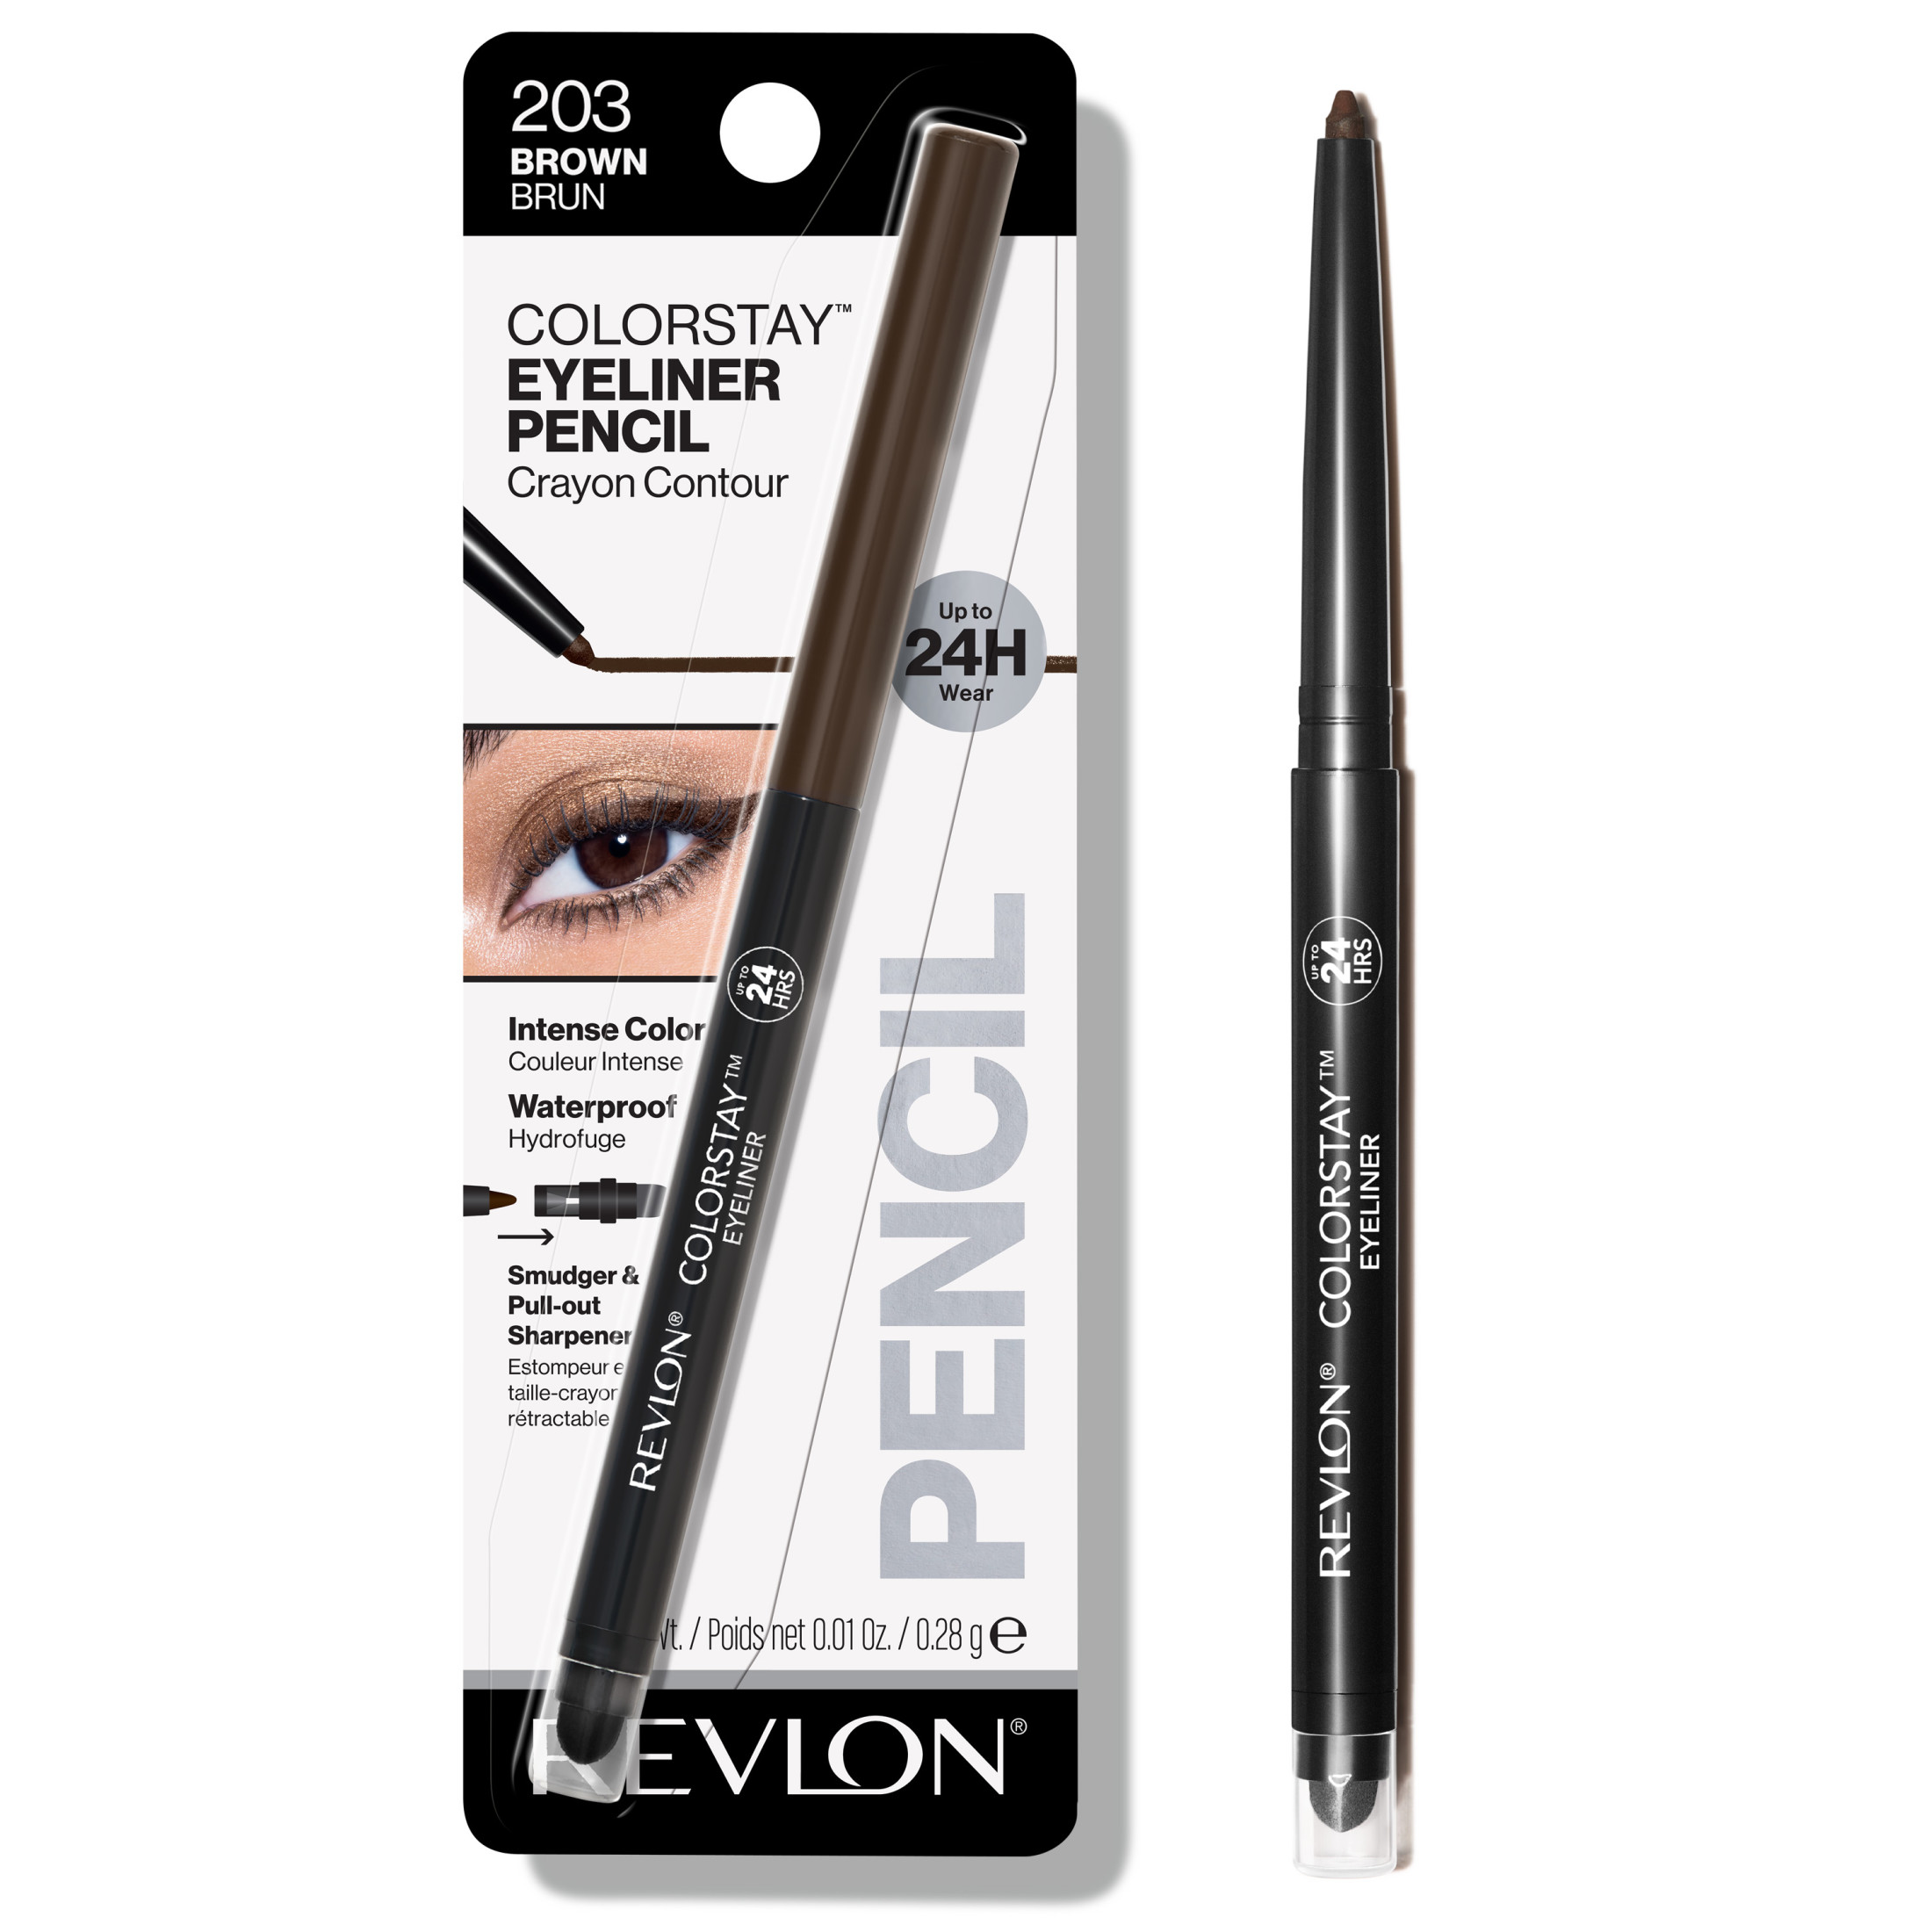 Revlon ColorStay Waterproof Eyeliner Pencil, 24HR Wear, Built-in Sharpener, 203 Brown, 0.01 oz - image 1 of 8